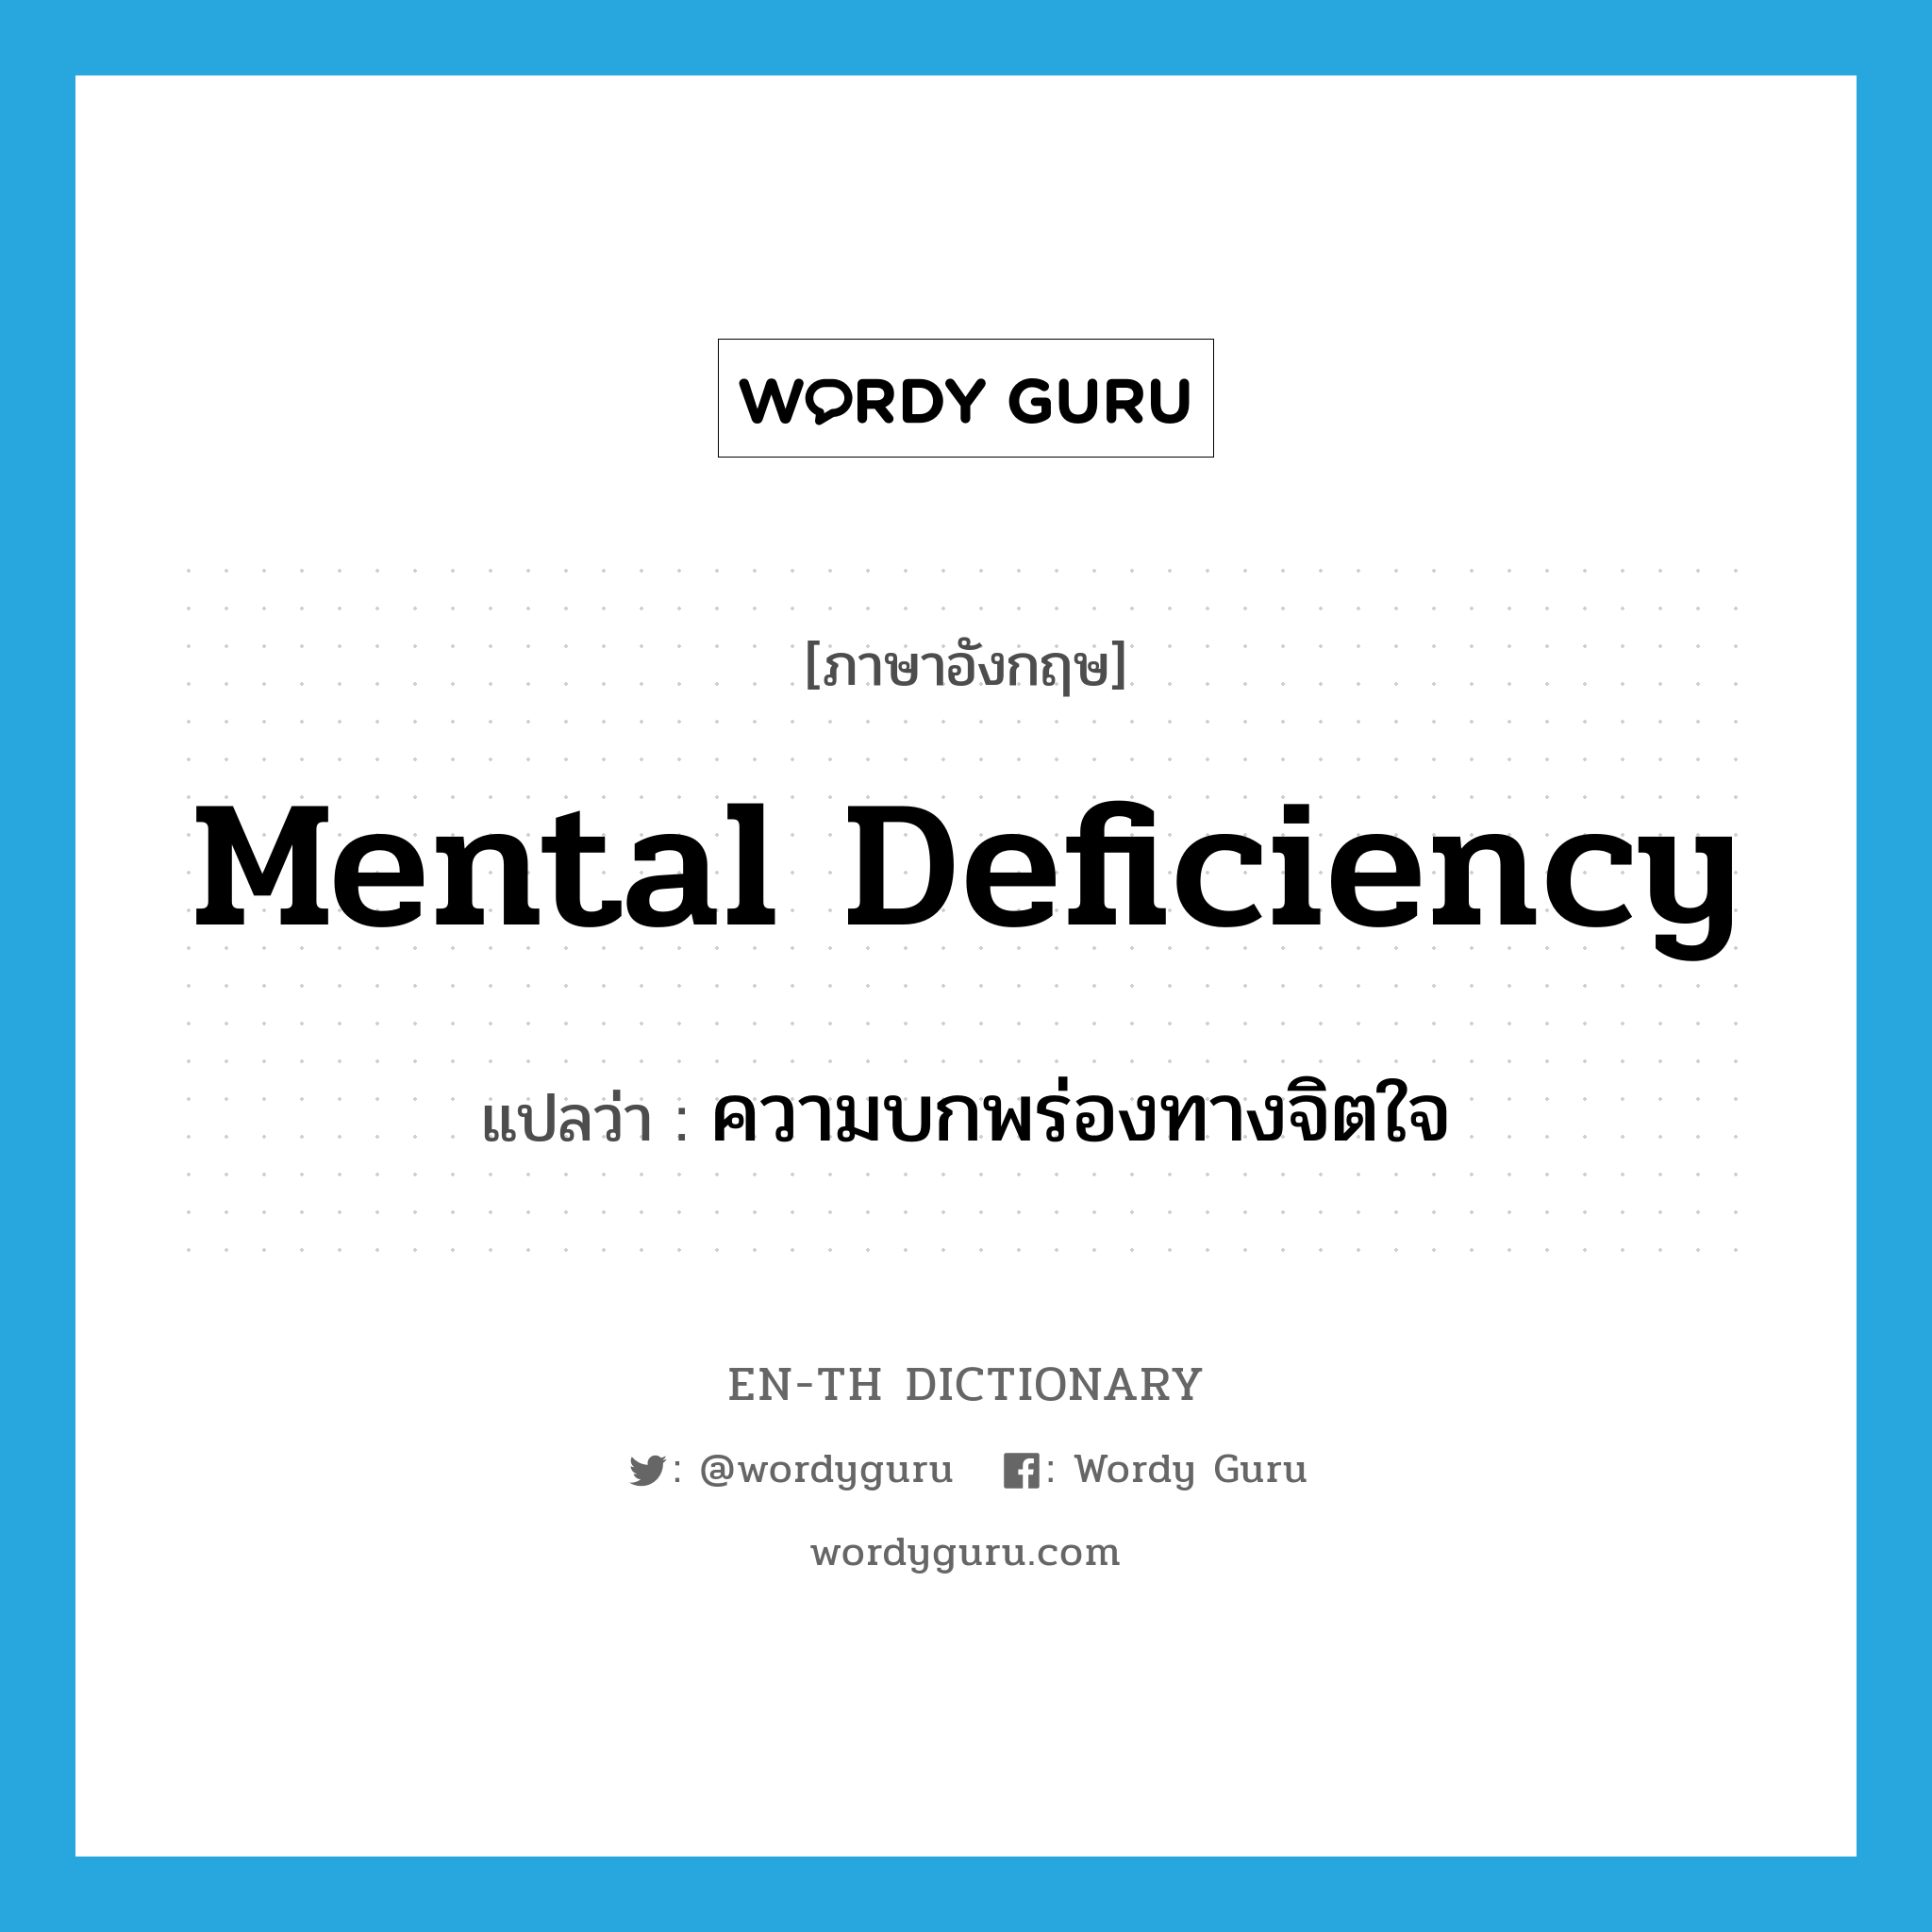 mental deficiency แปลว่า?, คำศัพท์ภาษาอังกฤษ mental deficiency แปลว่า ความบกพร่องทางจิตใจ ประเภท N หมวด N